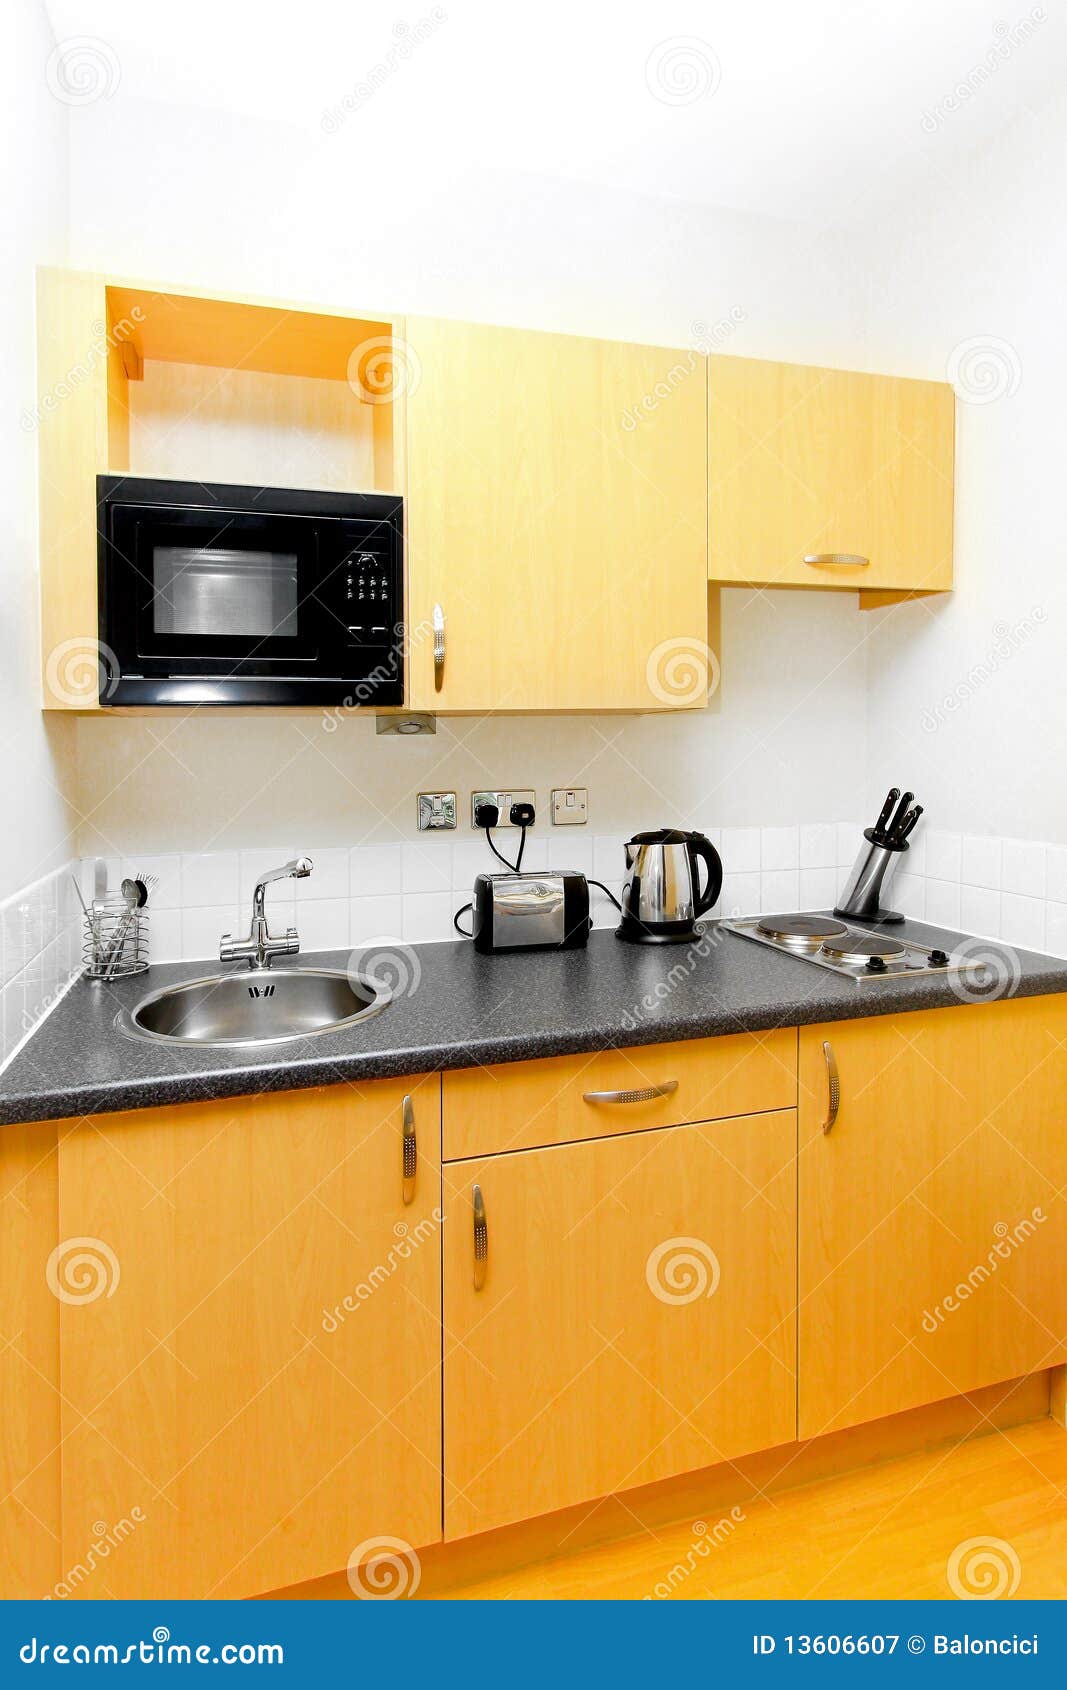 practical kitchen